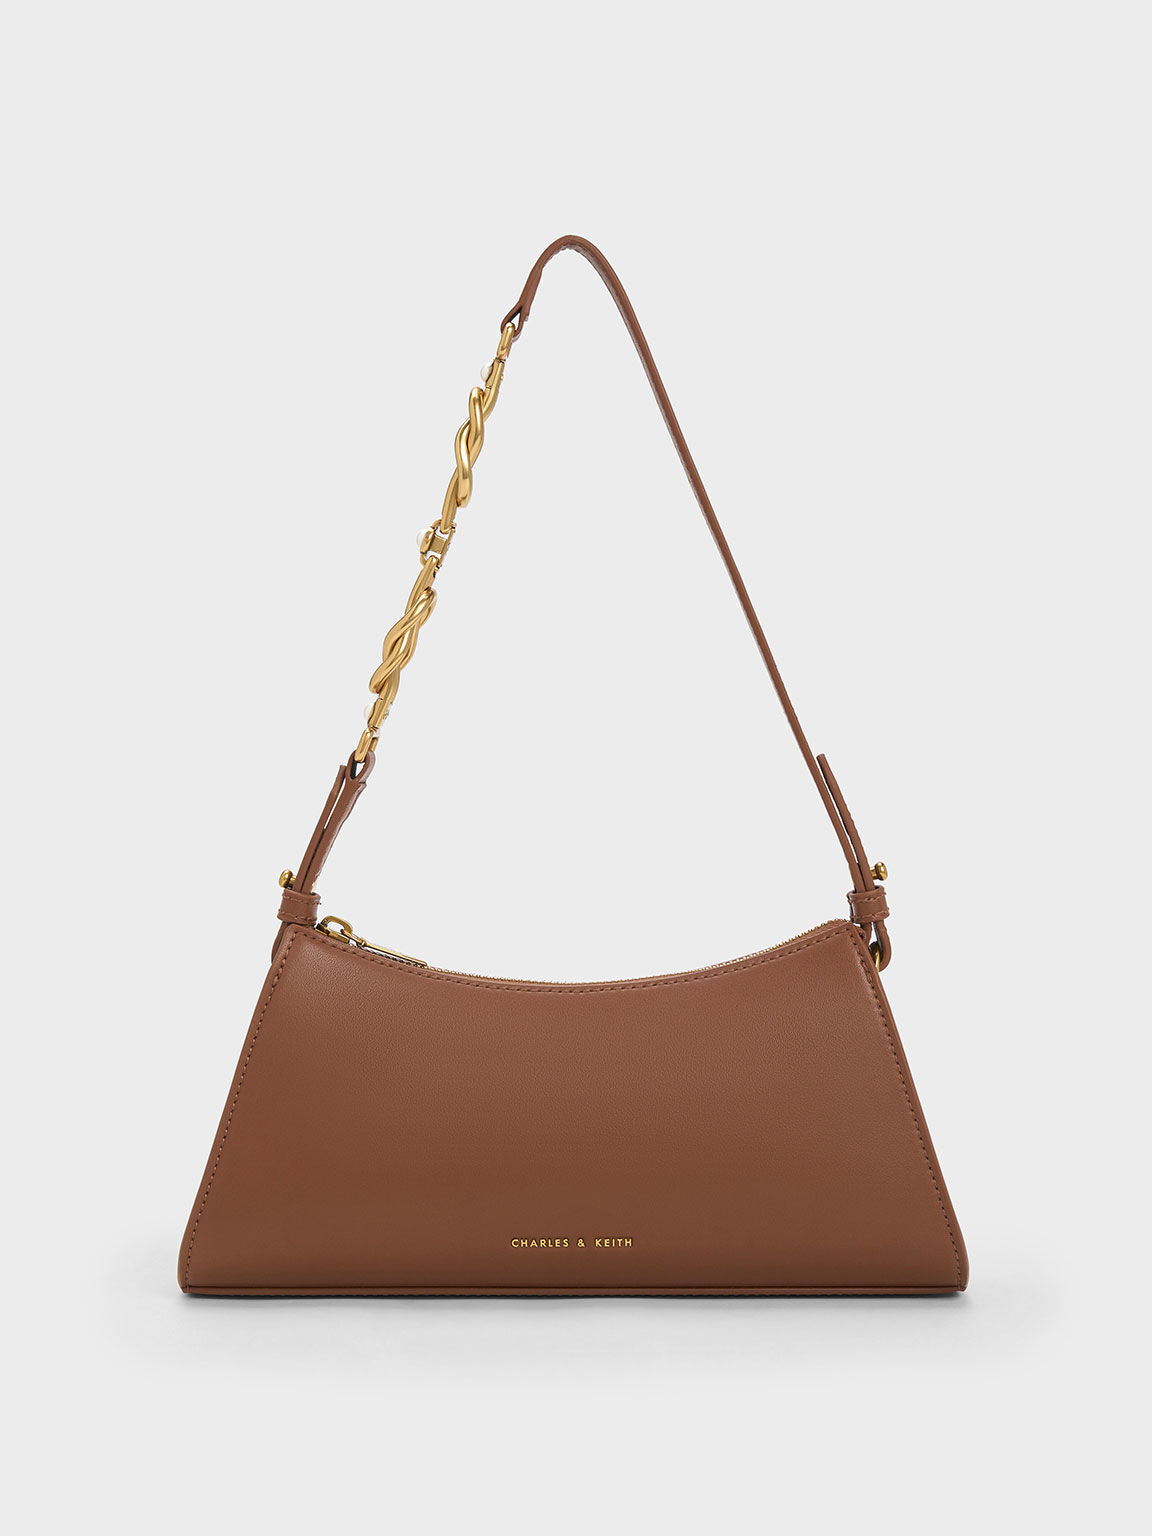 Túi đeo vai hình thang Metallic-Accent, Chocolate, hi-res